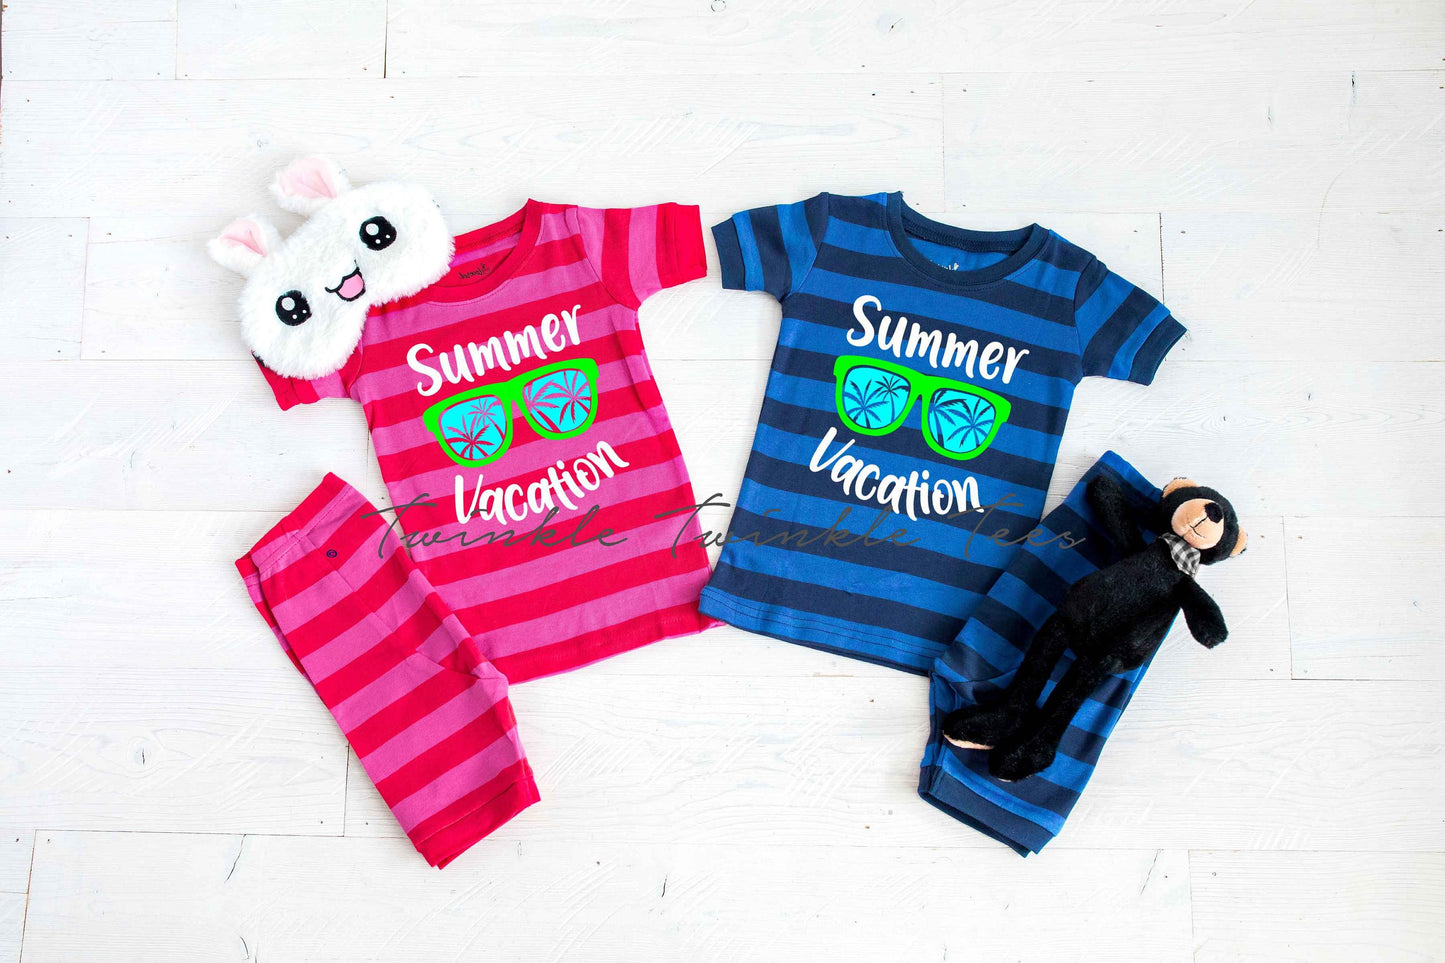 Summer Vacation Pajamas - Striped Shorts Toddler and Youth Pajamas - Kids Pajamas - Vacation Pajamas - Cruise Pajamas